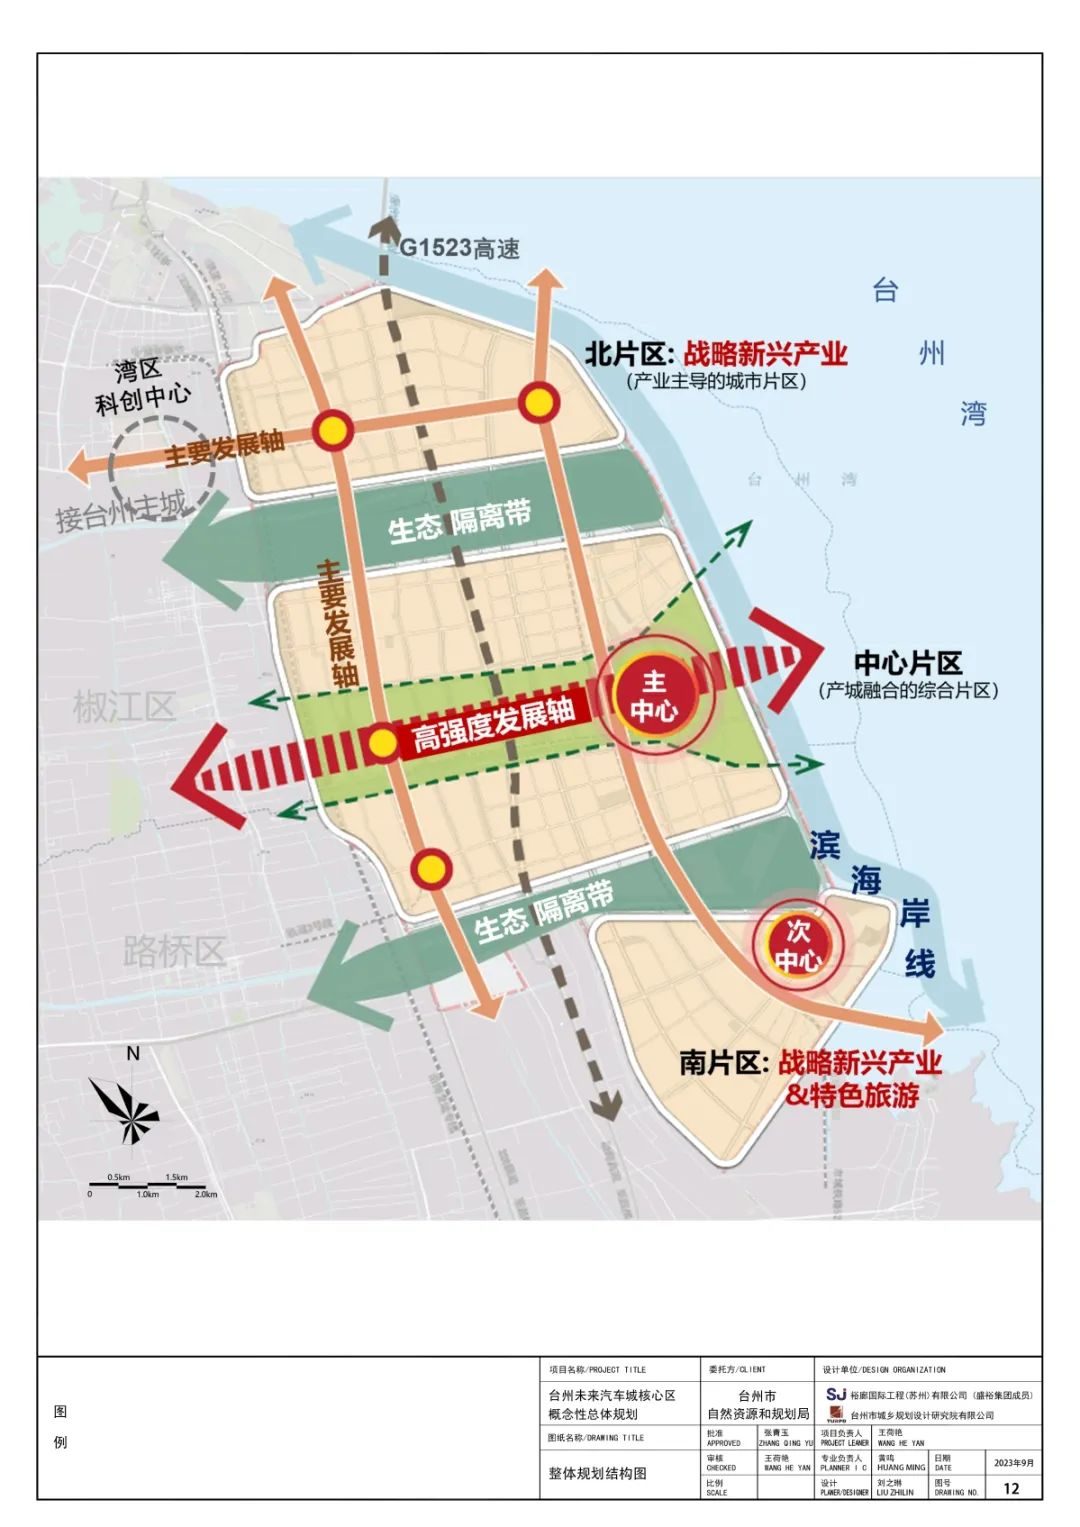 有房丨台州湾新区大规划 台州未来汽车城核心区概念性整体规划公开